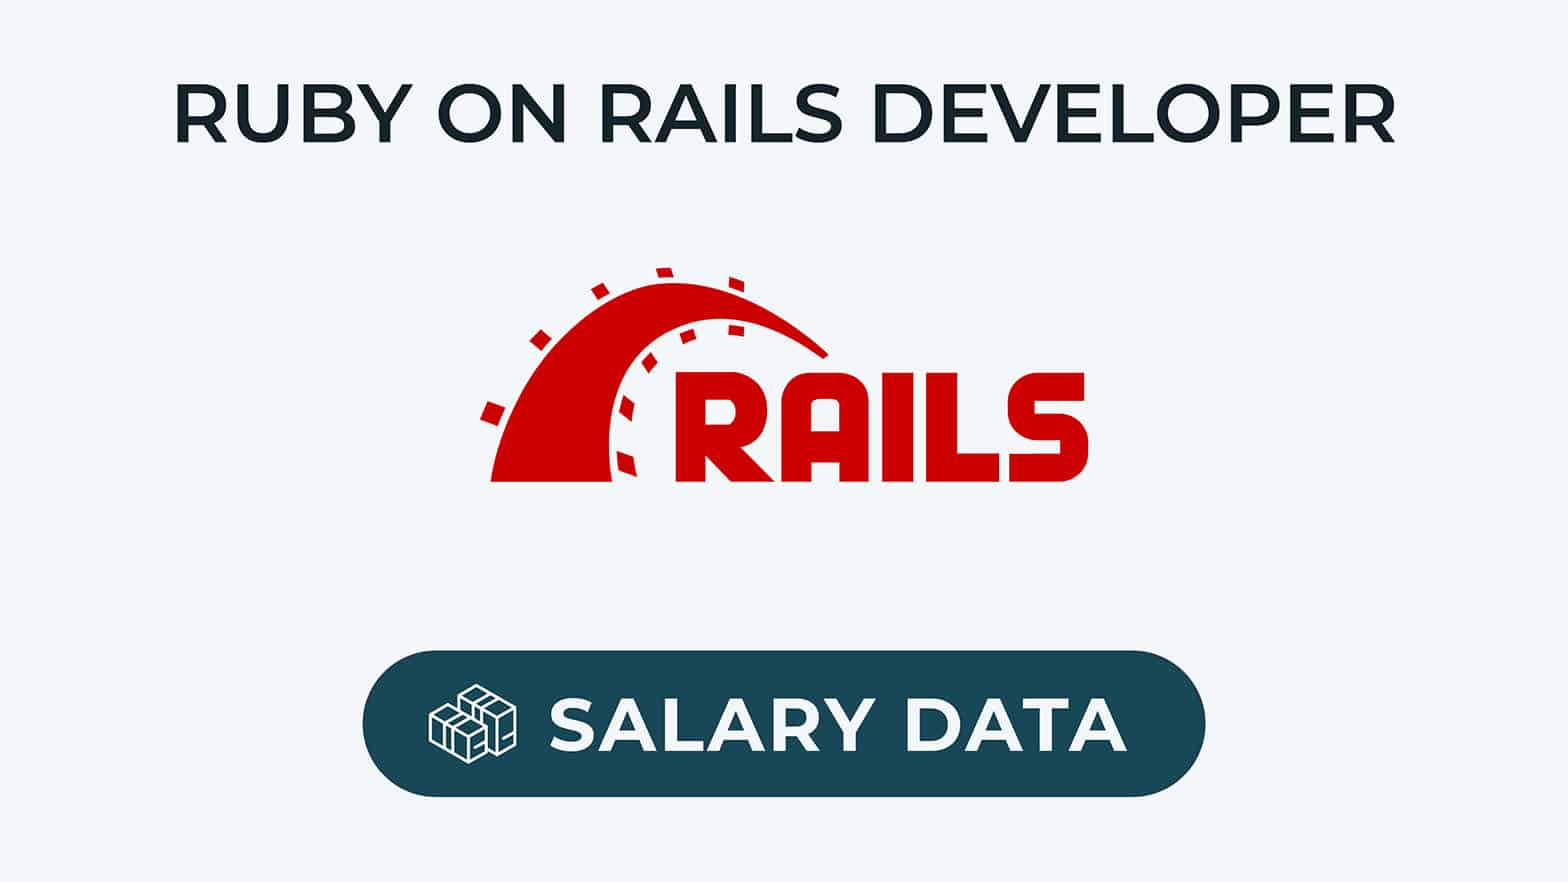 datos salariales del desarrollador de ruby on rails